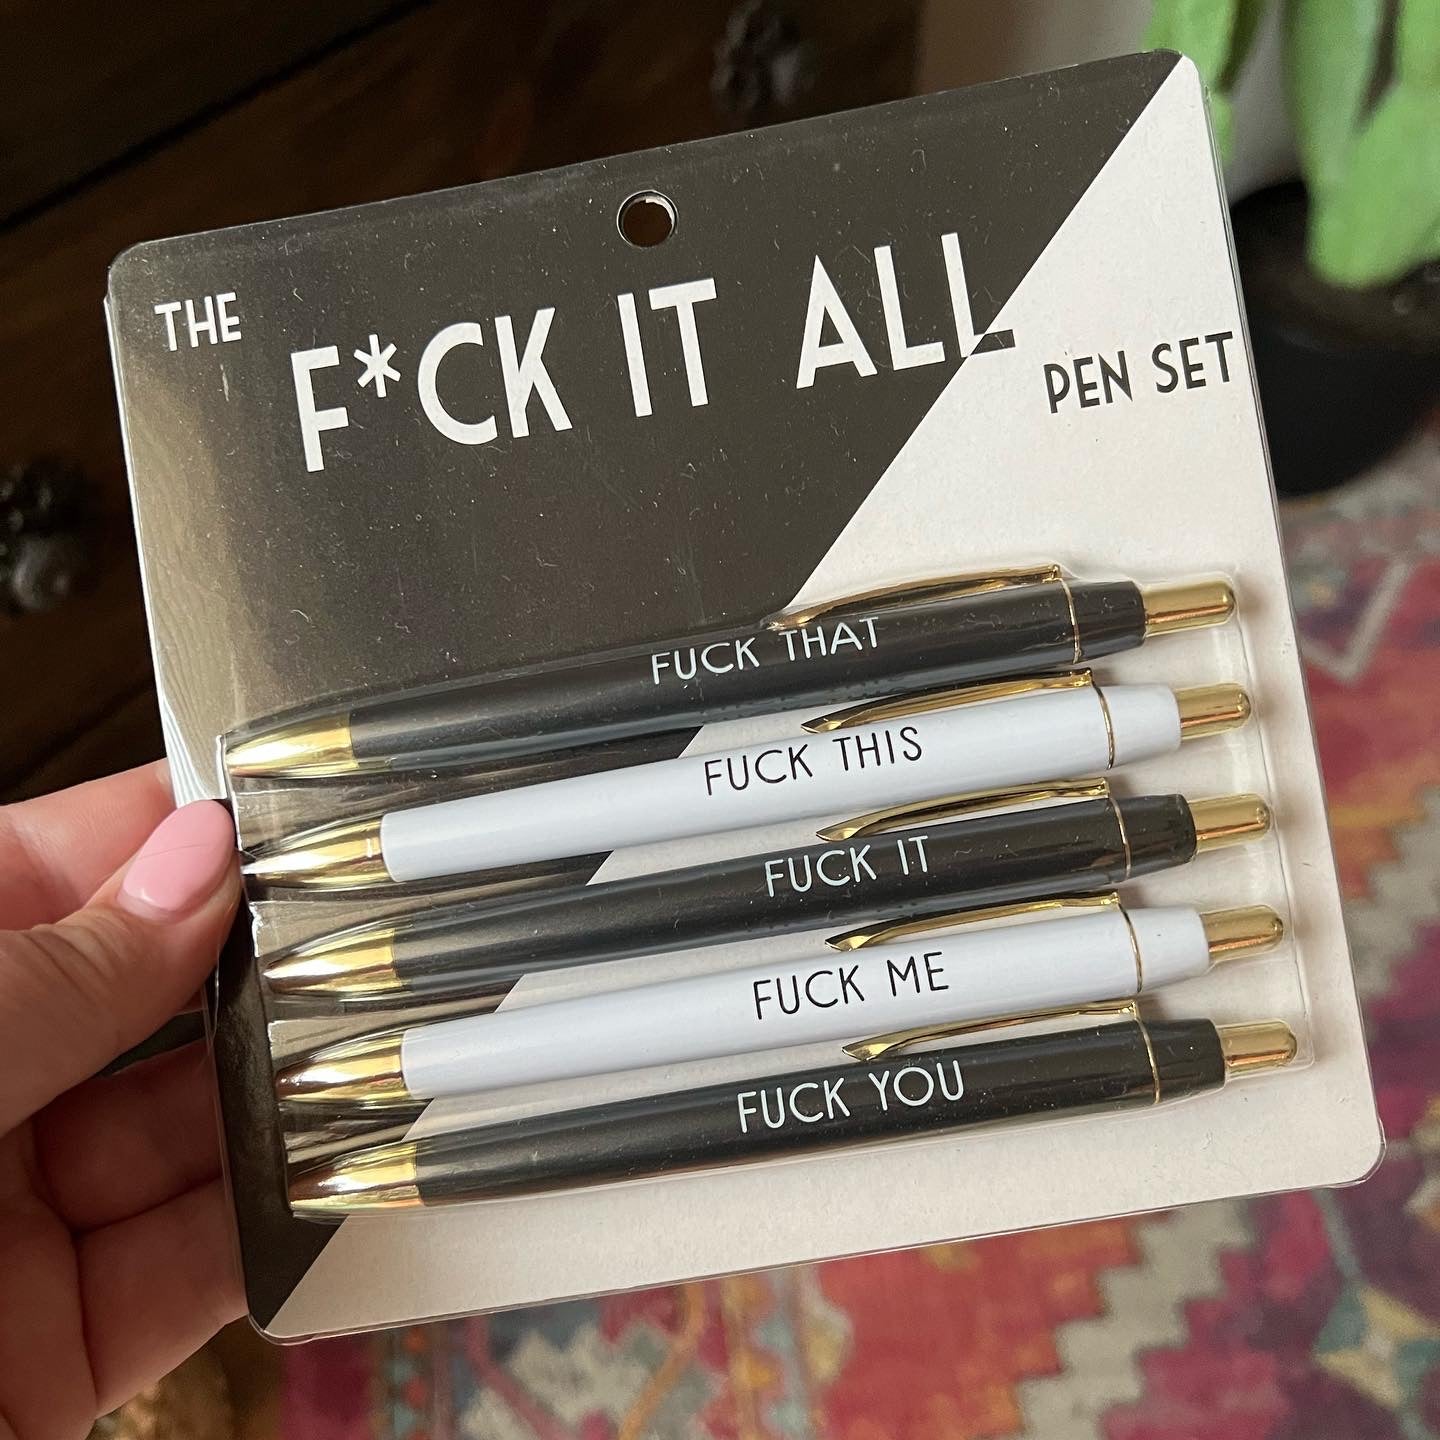 Fuck You Pen 